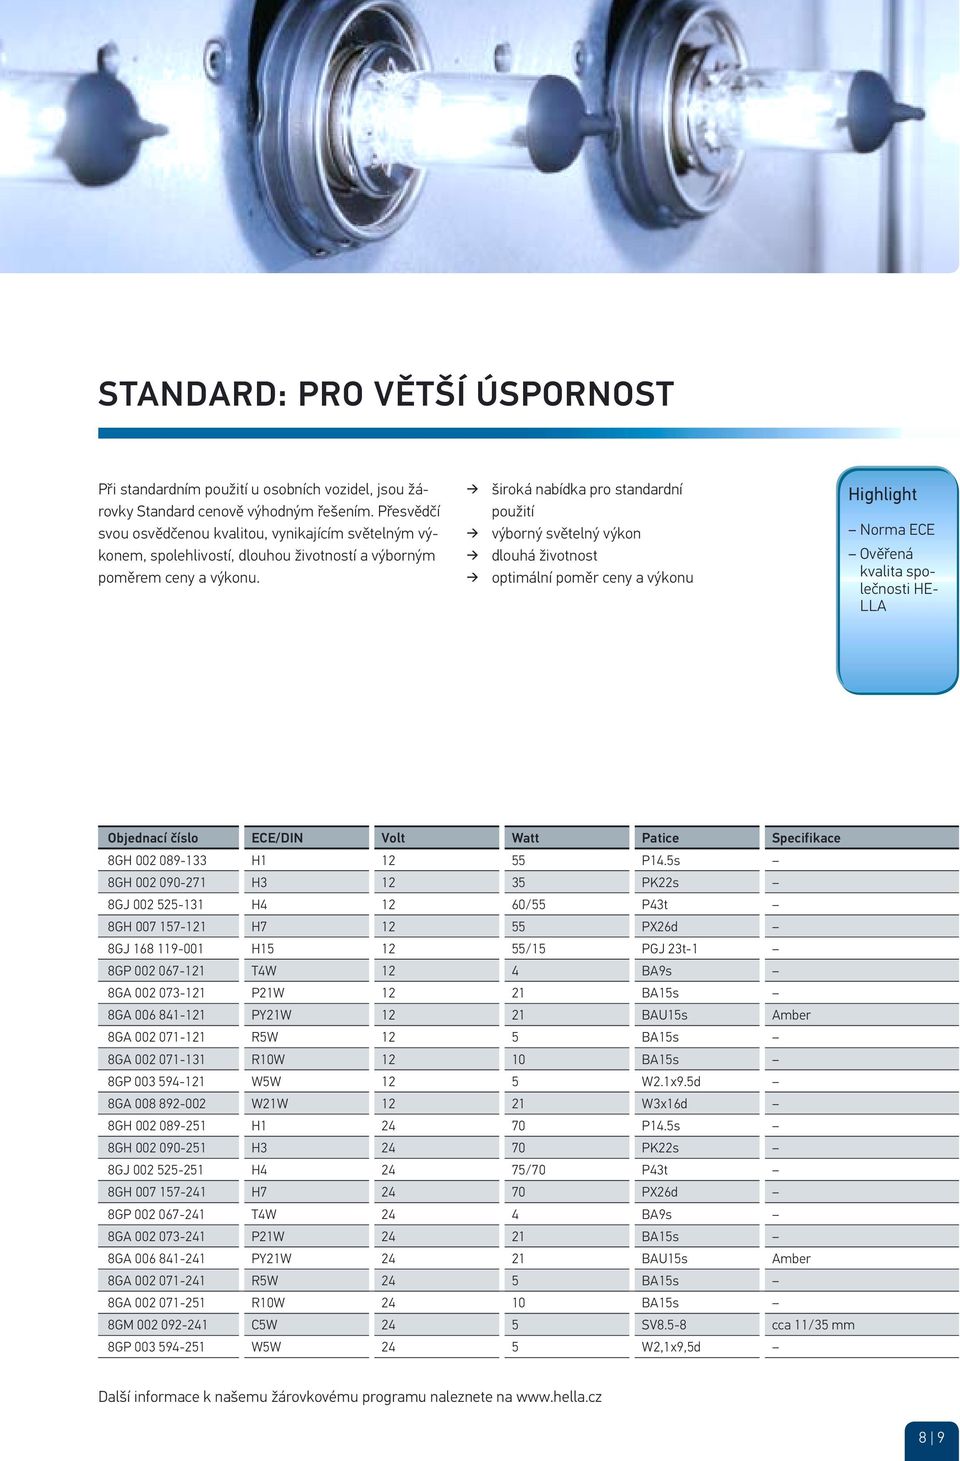 široká nabídka pro standardní použití výborný světelný výkon dlouhá životnost optimální poměr ceny a výkonu Highlight Norma ECE Ověřená kvalita společnosti HE- LLA Objednací číslo ECE/DIN Volt Watt